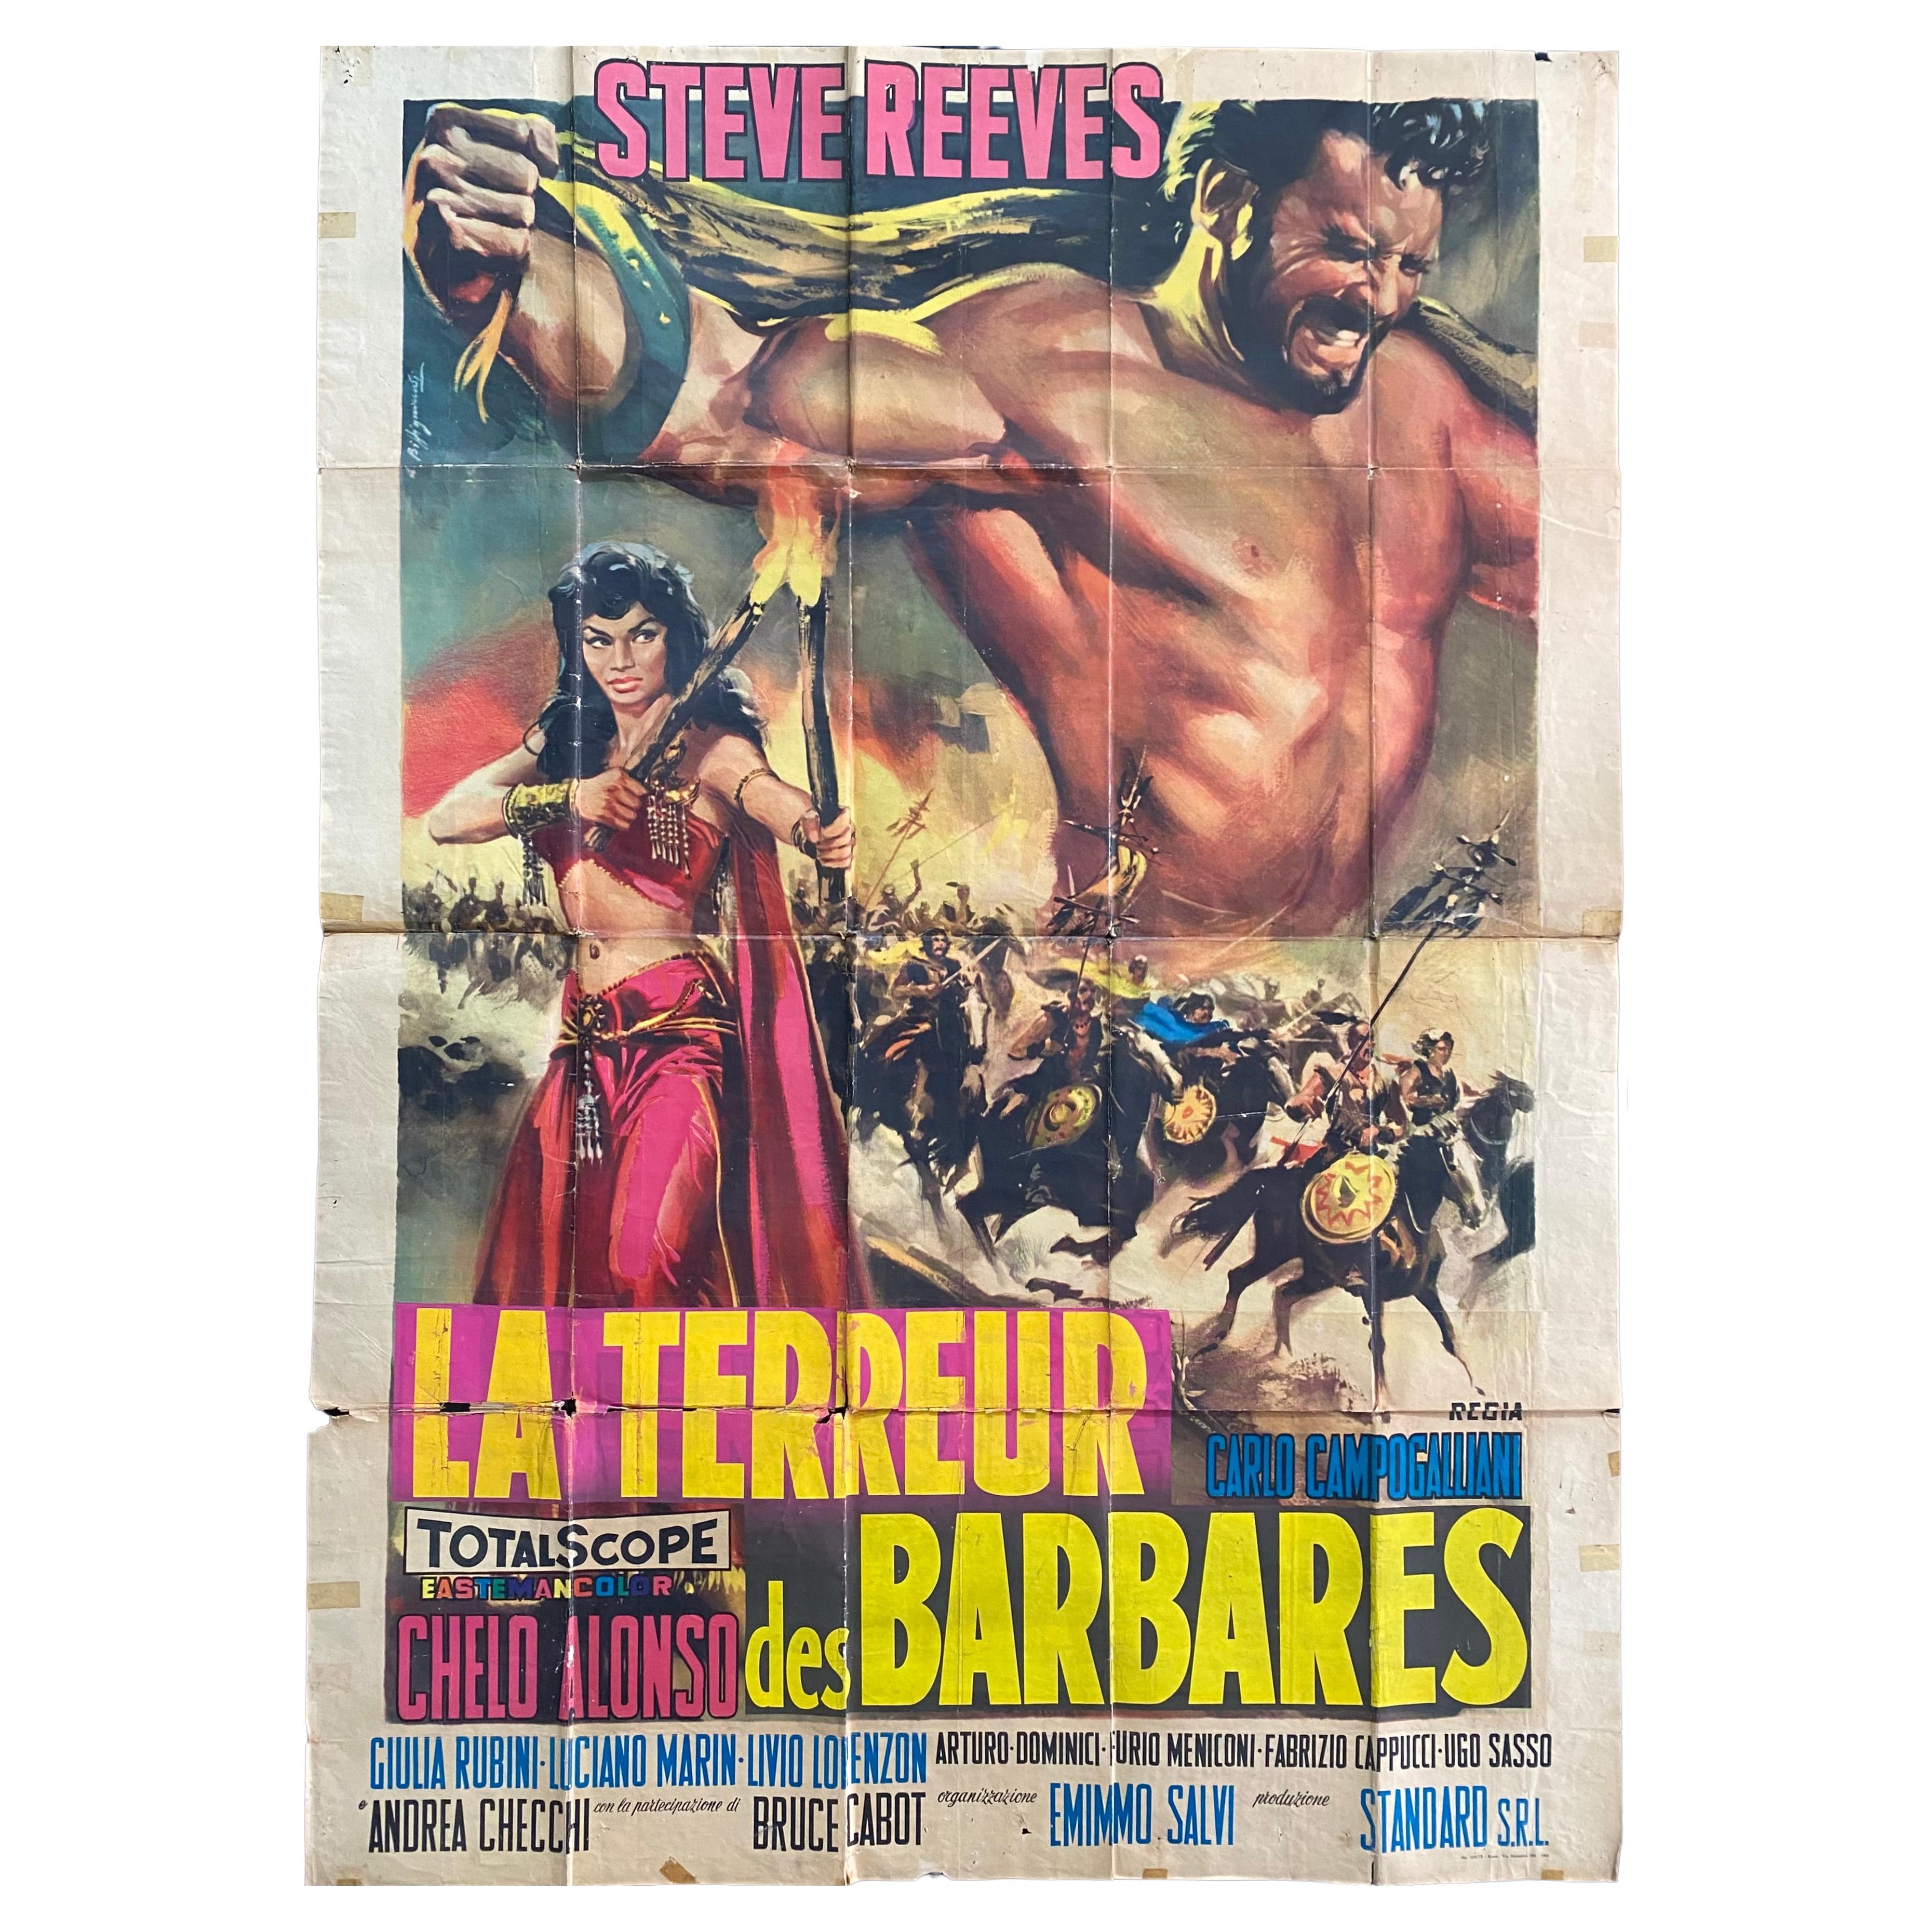 Movie Poster from the 1959 Italian Adventure movie “Il terrore dei barbari”.